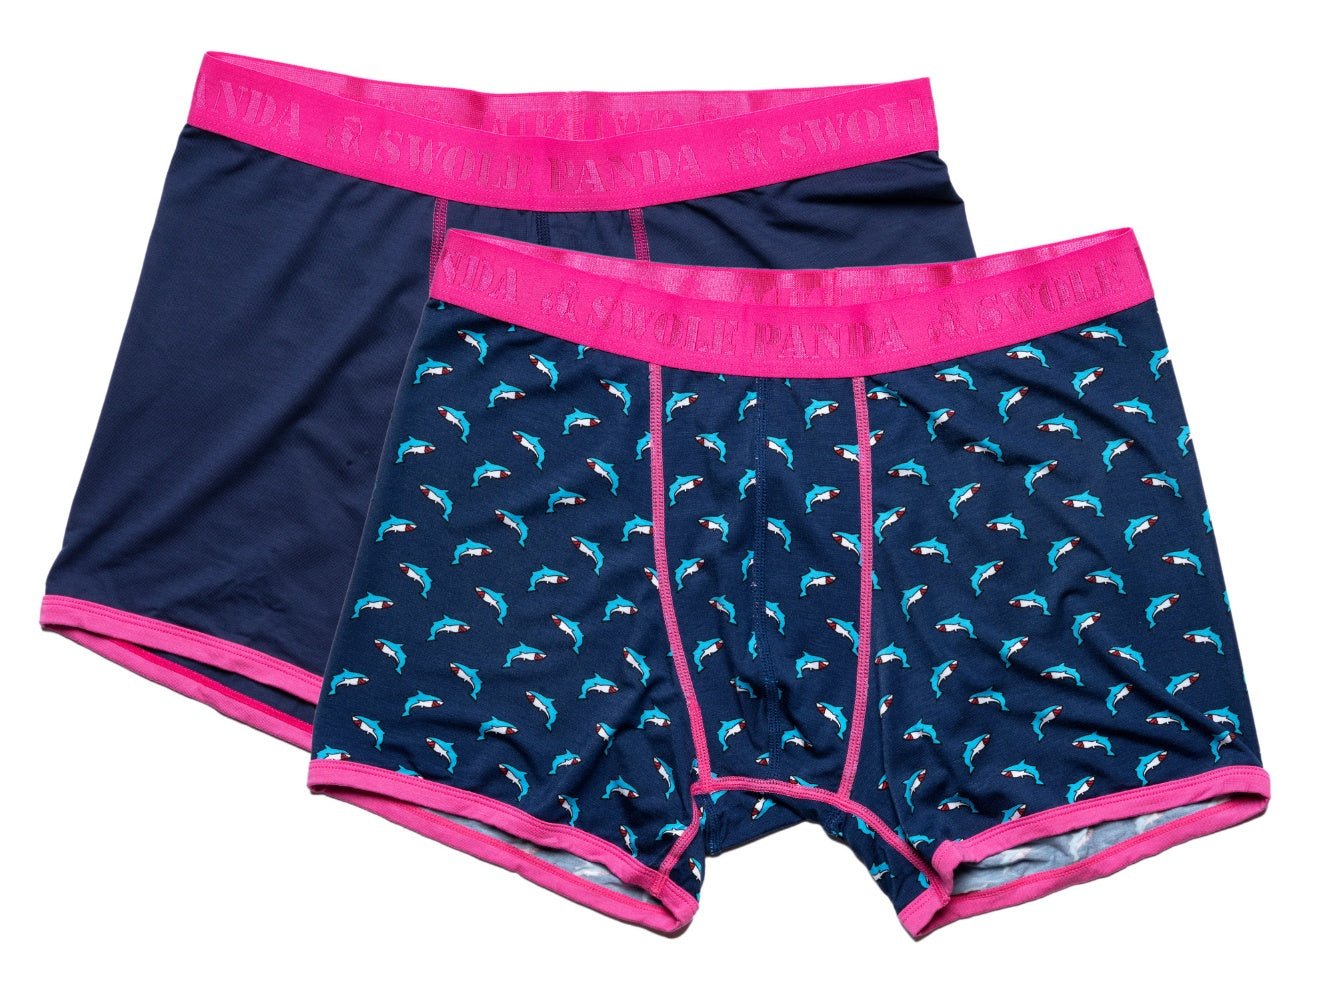 underwear-bamboo-boxers-2-pack-pink-navy-sharks-1_6059eced-861e-4c3b-9d34-dd31e40bdeb8.jpg